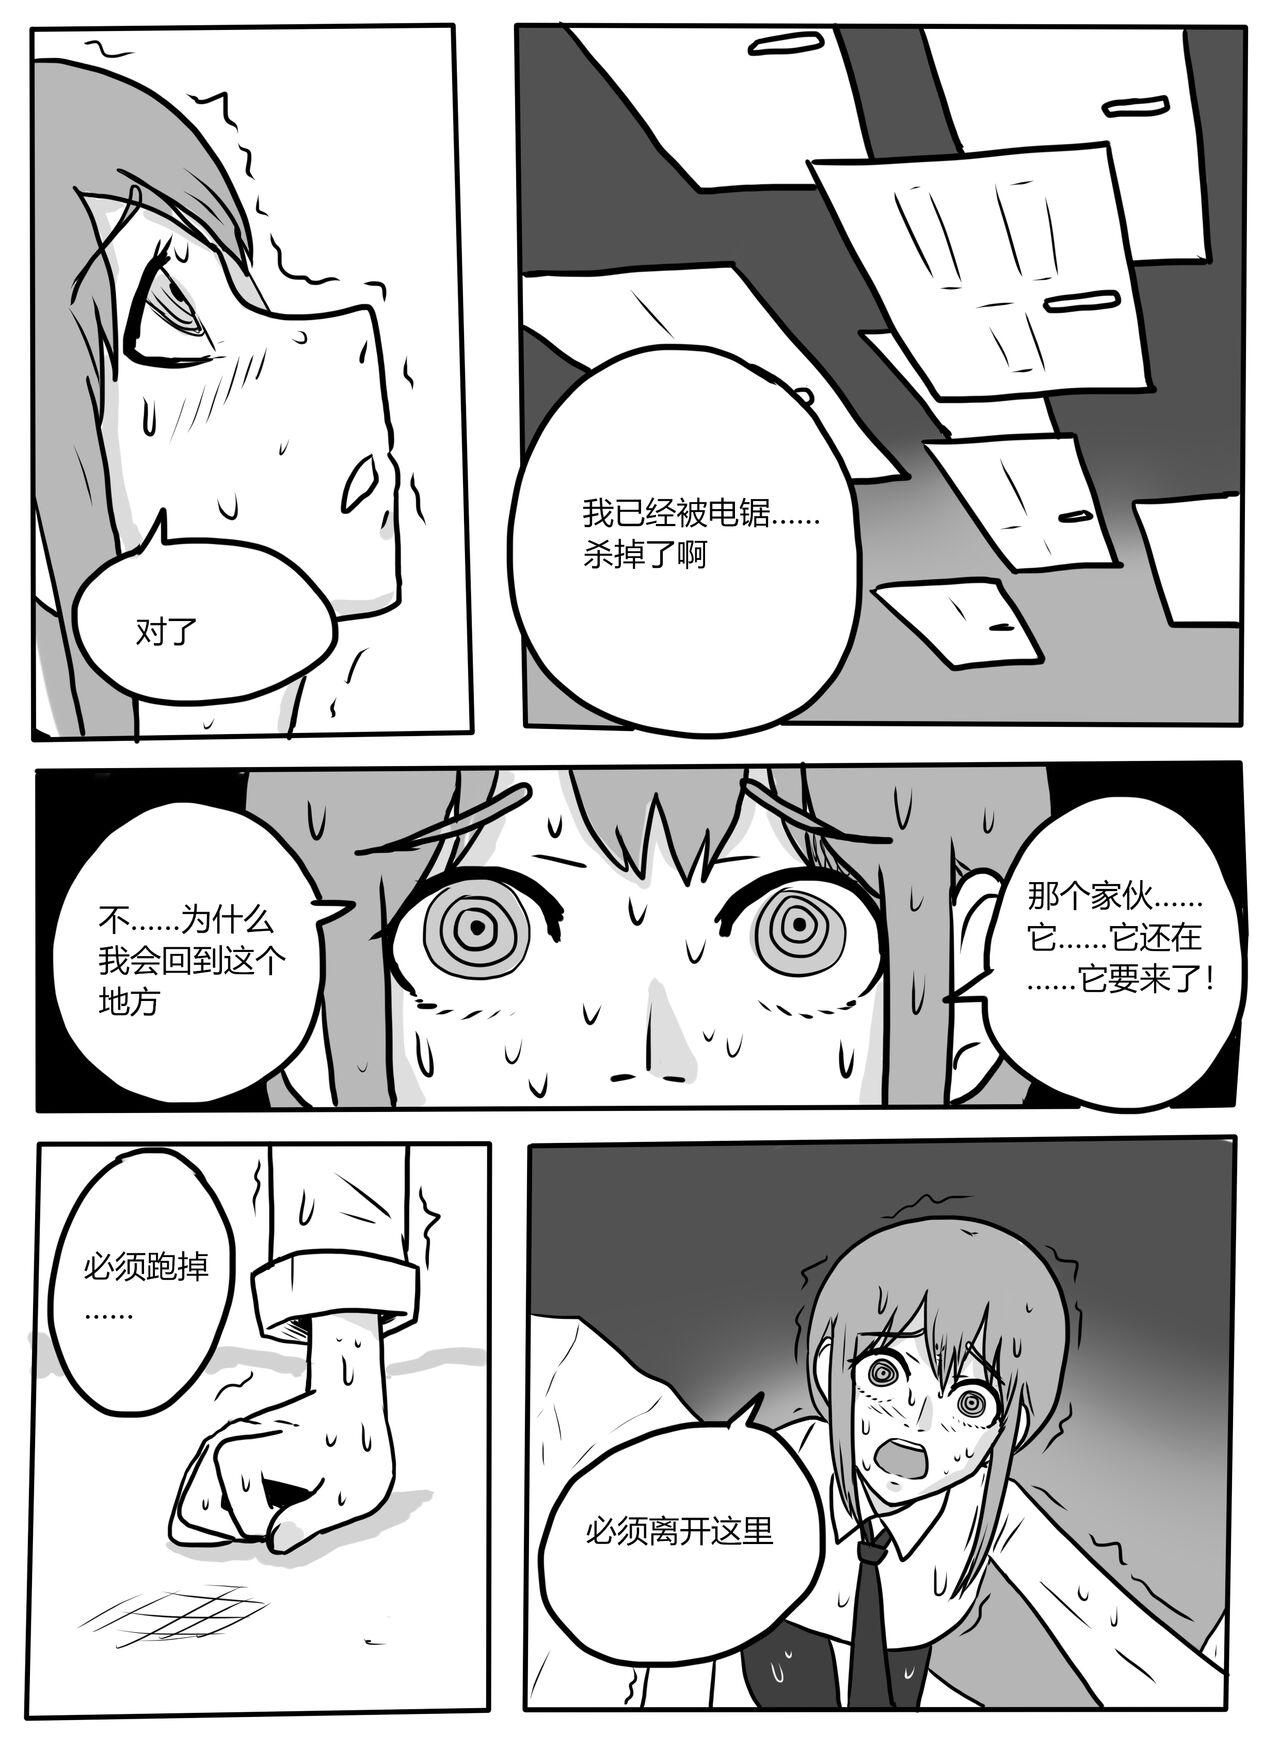 Hot Girls Fucking Makima tk manga - Chainsaw man Clitoris - Page 3